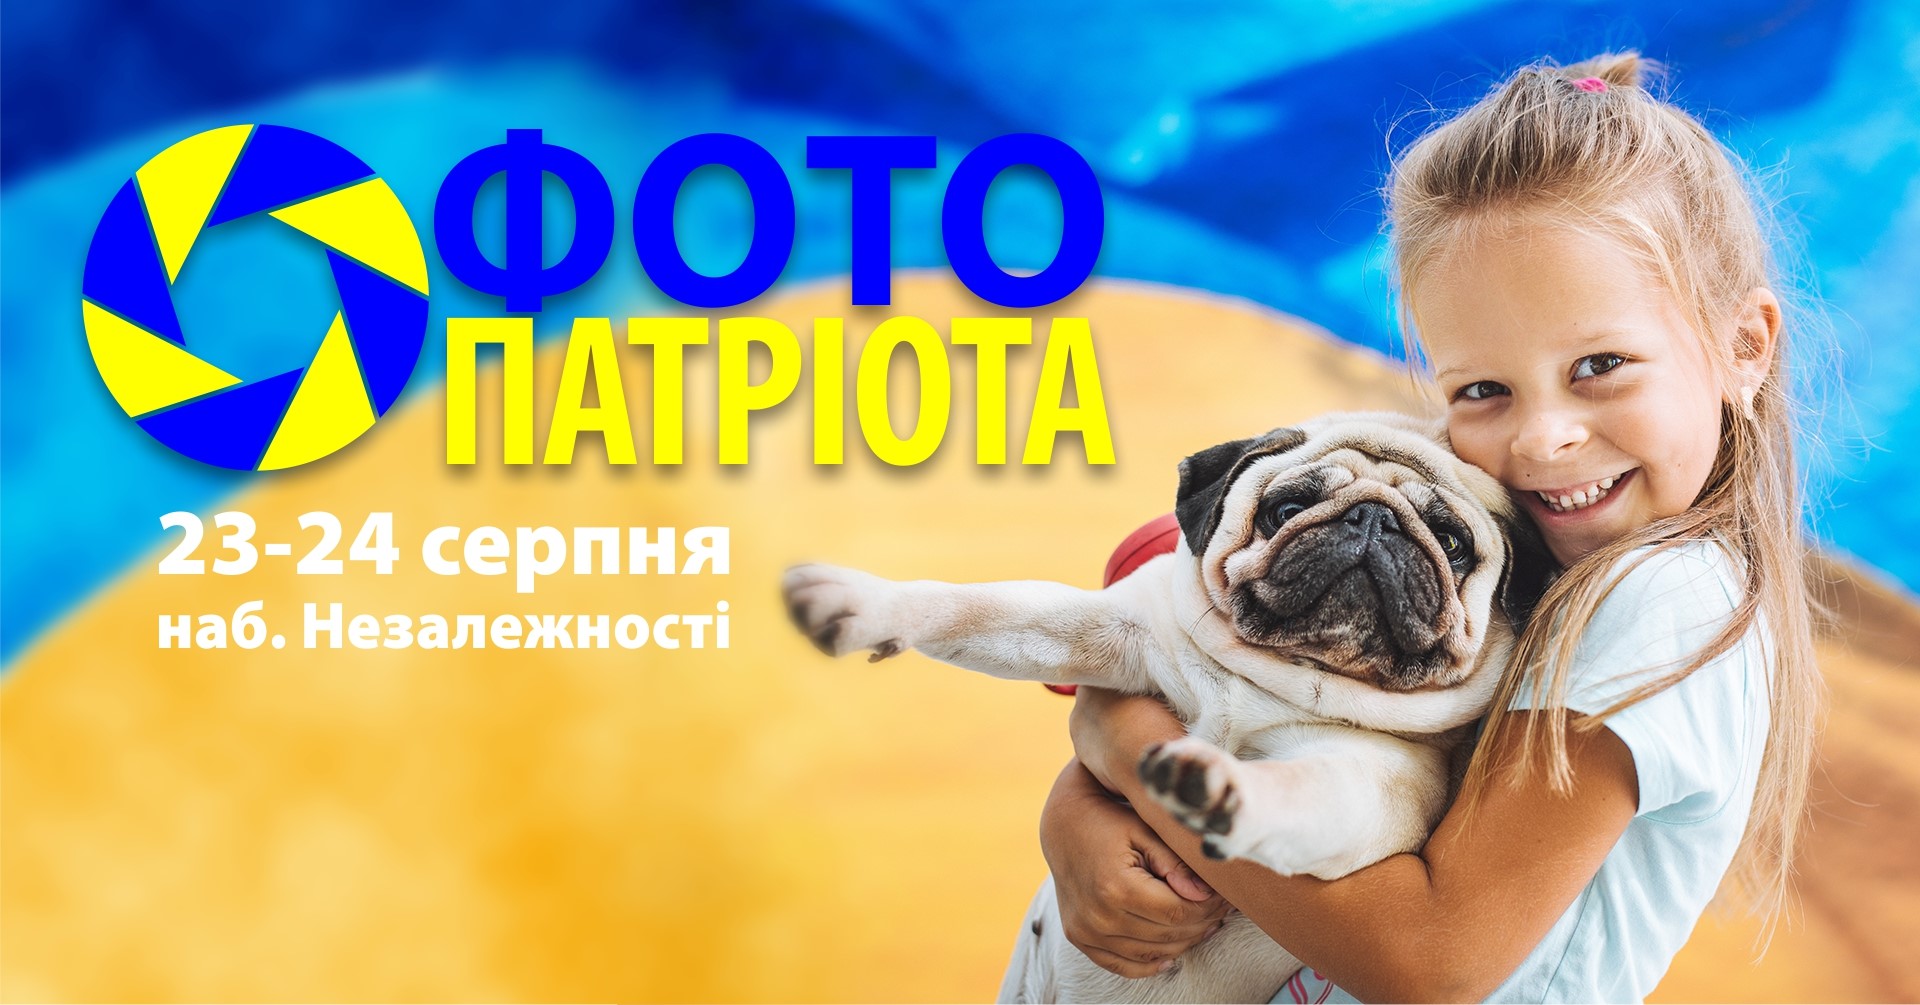 В Ужгороді традиційно відбудеться акція "Фото патріота"